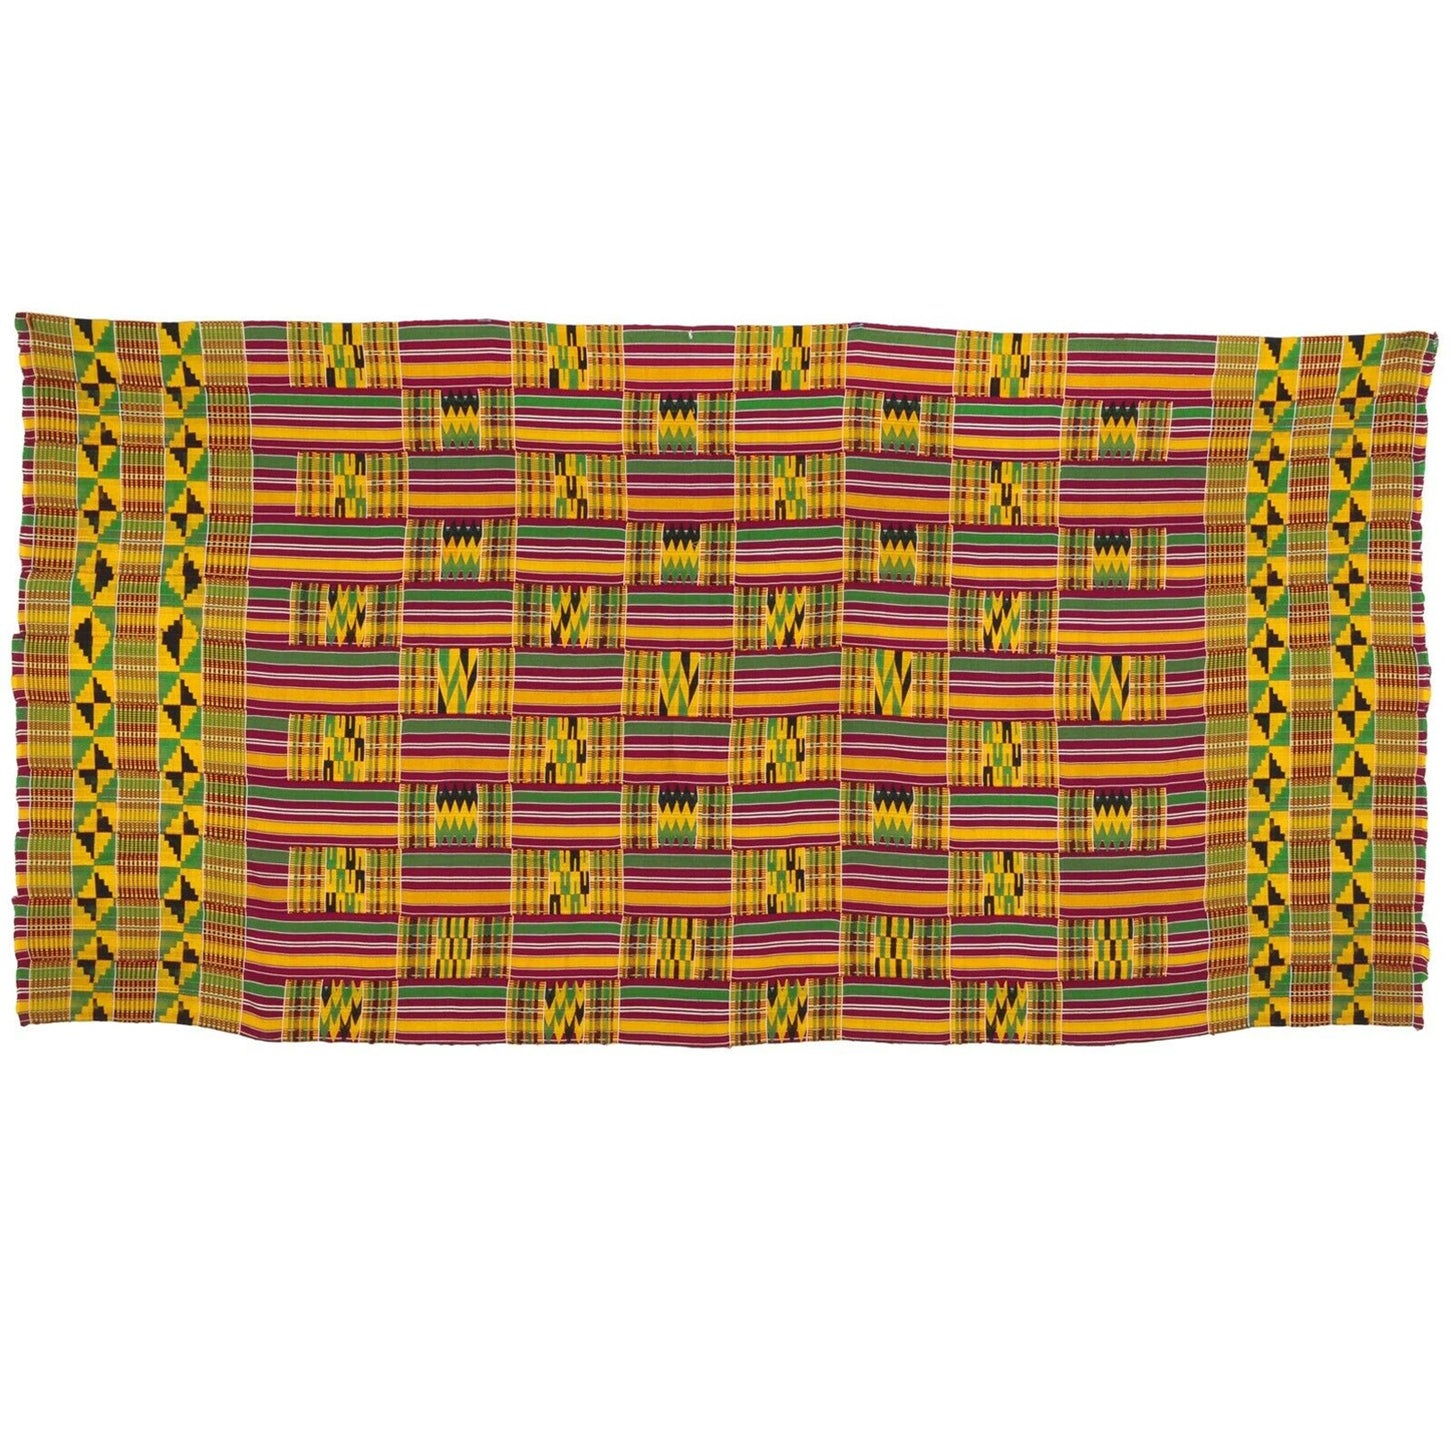 RARE DESIGN African Kente hand woven cloth Ashanti Asante Akan textile Ghana - Tribalgh